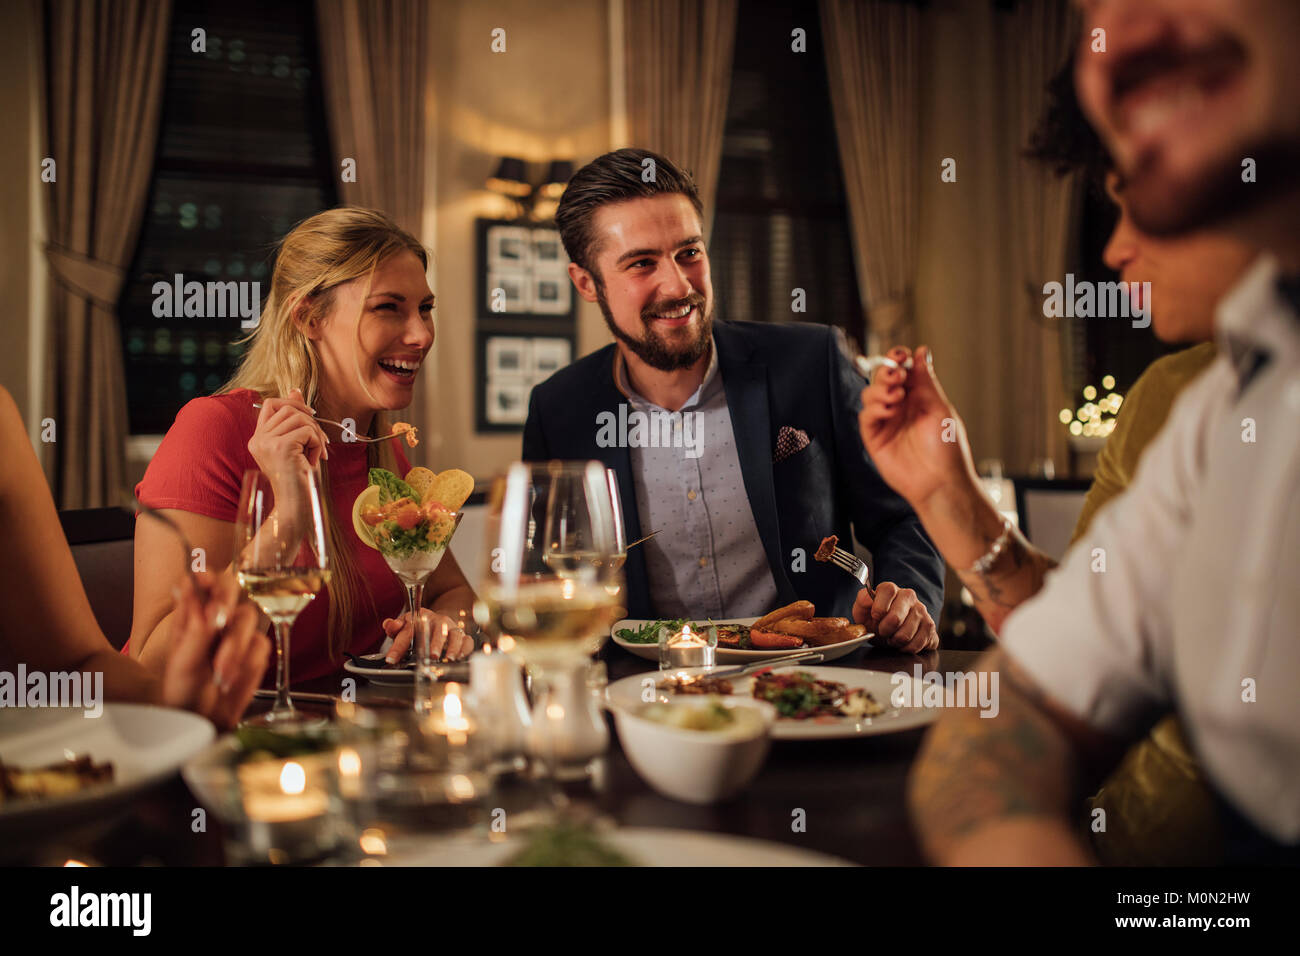 Mitte der erwachsenen Paare sind Geselligkeit über eine Mahlzeit in einem Restaurant. Sie essen und trinken Champagner beim Lachen und Reden. Stockfoto